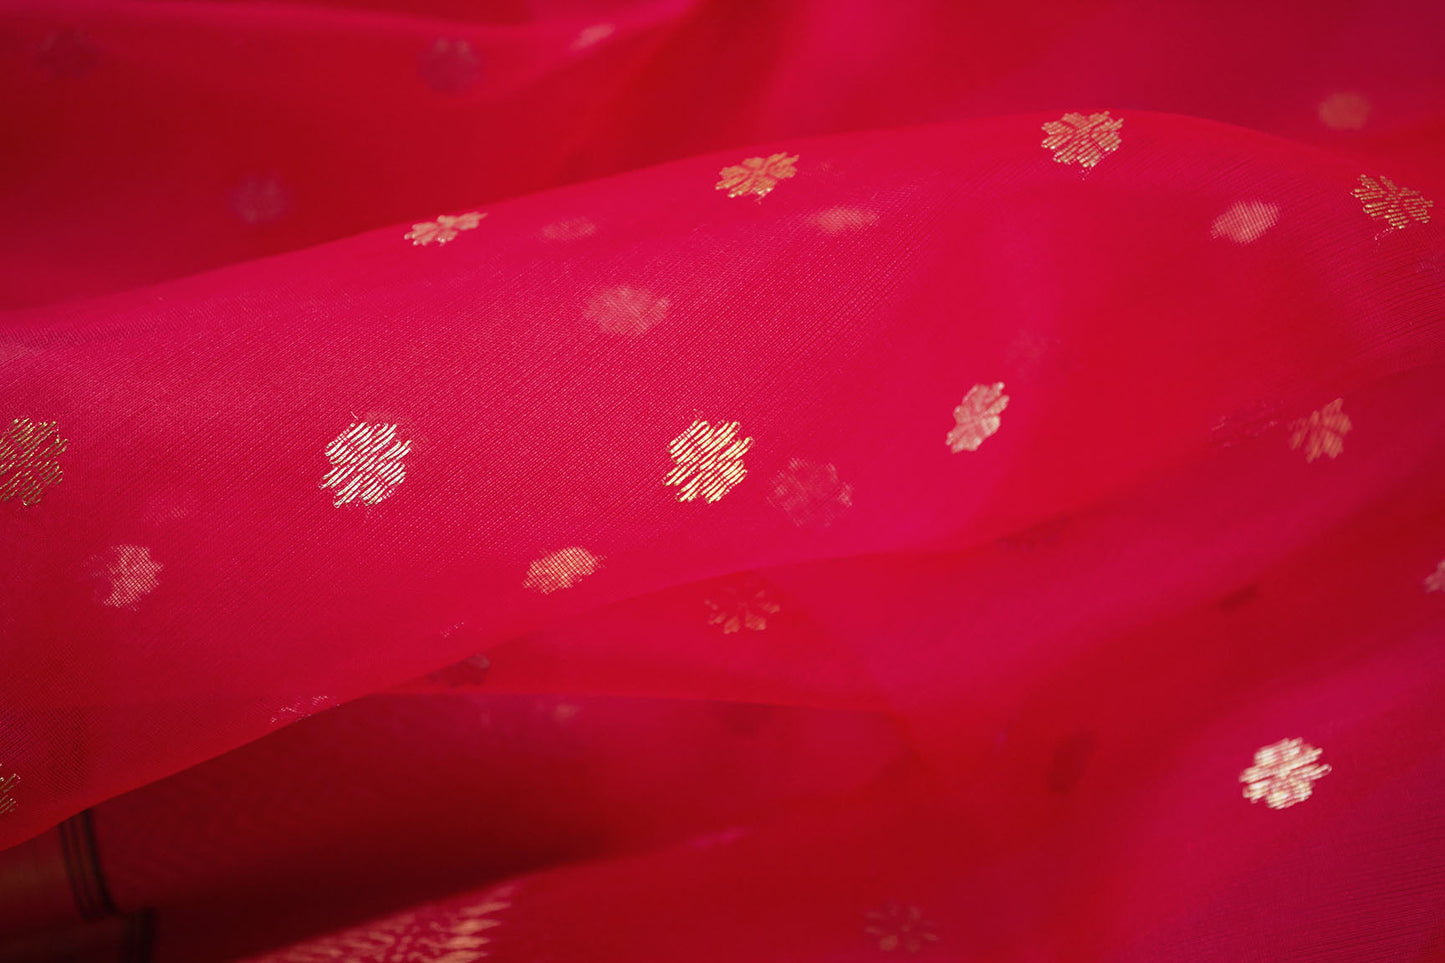 Shurkh Laal Chanderi Handloom Sari